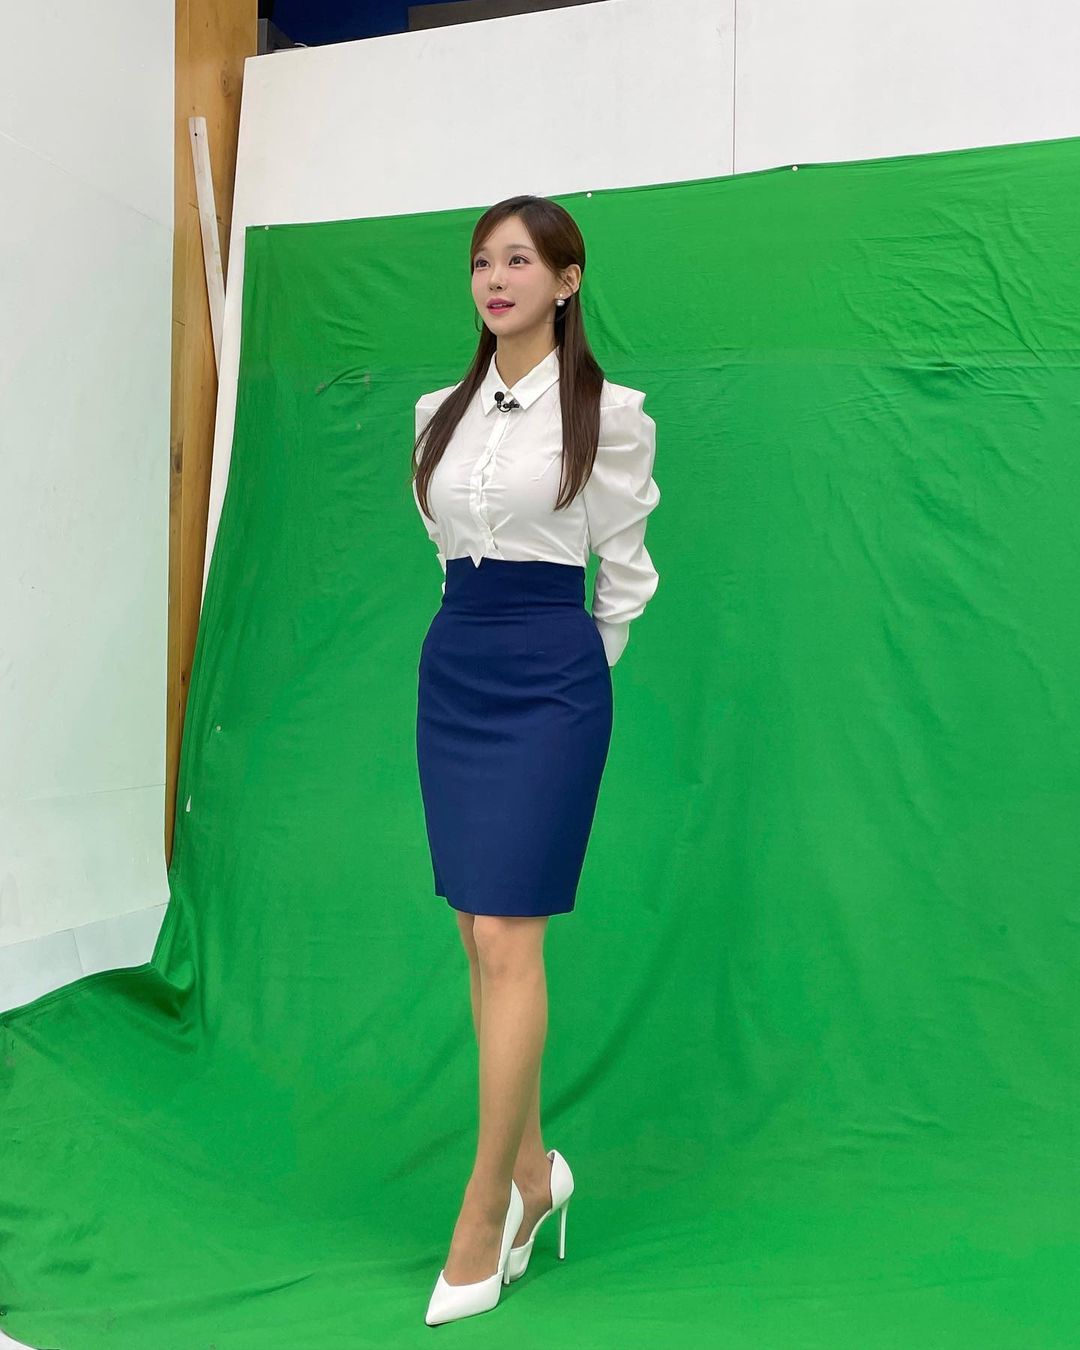 김윤희 아나운서의 골반 몸매